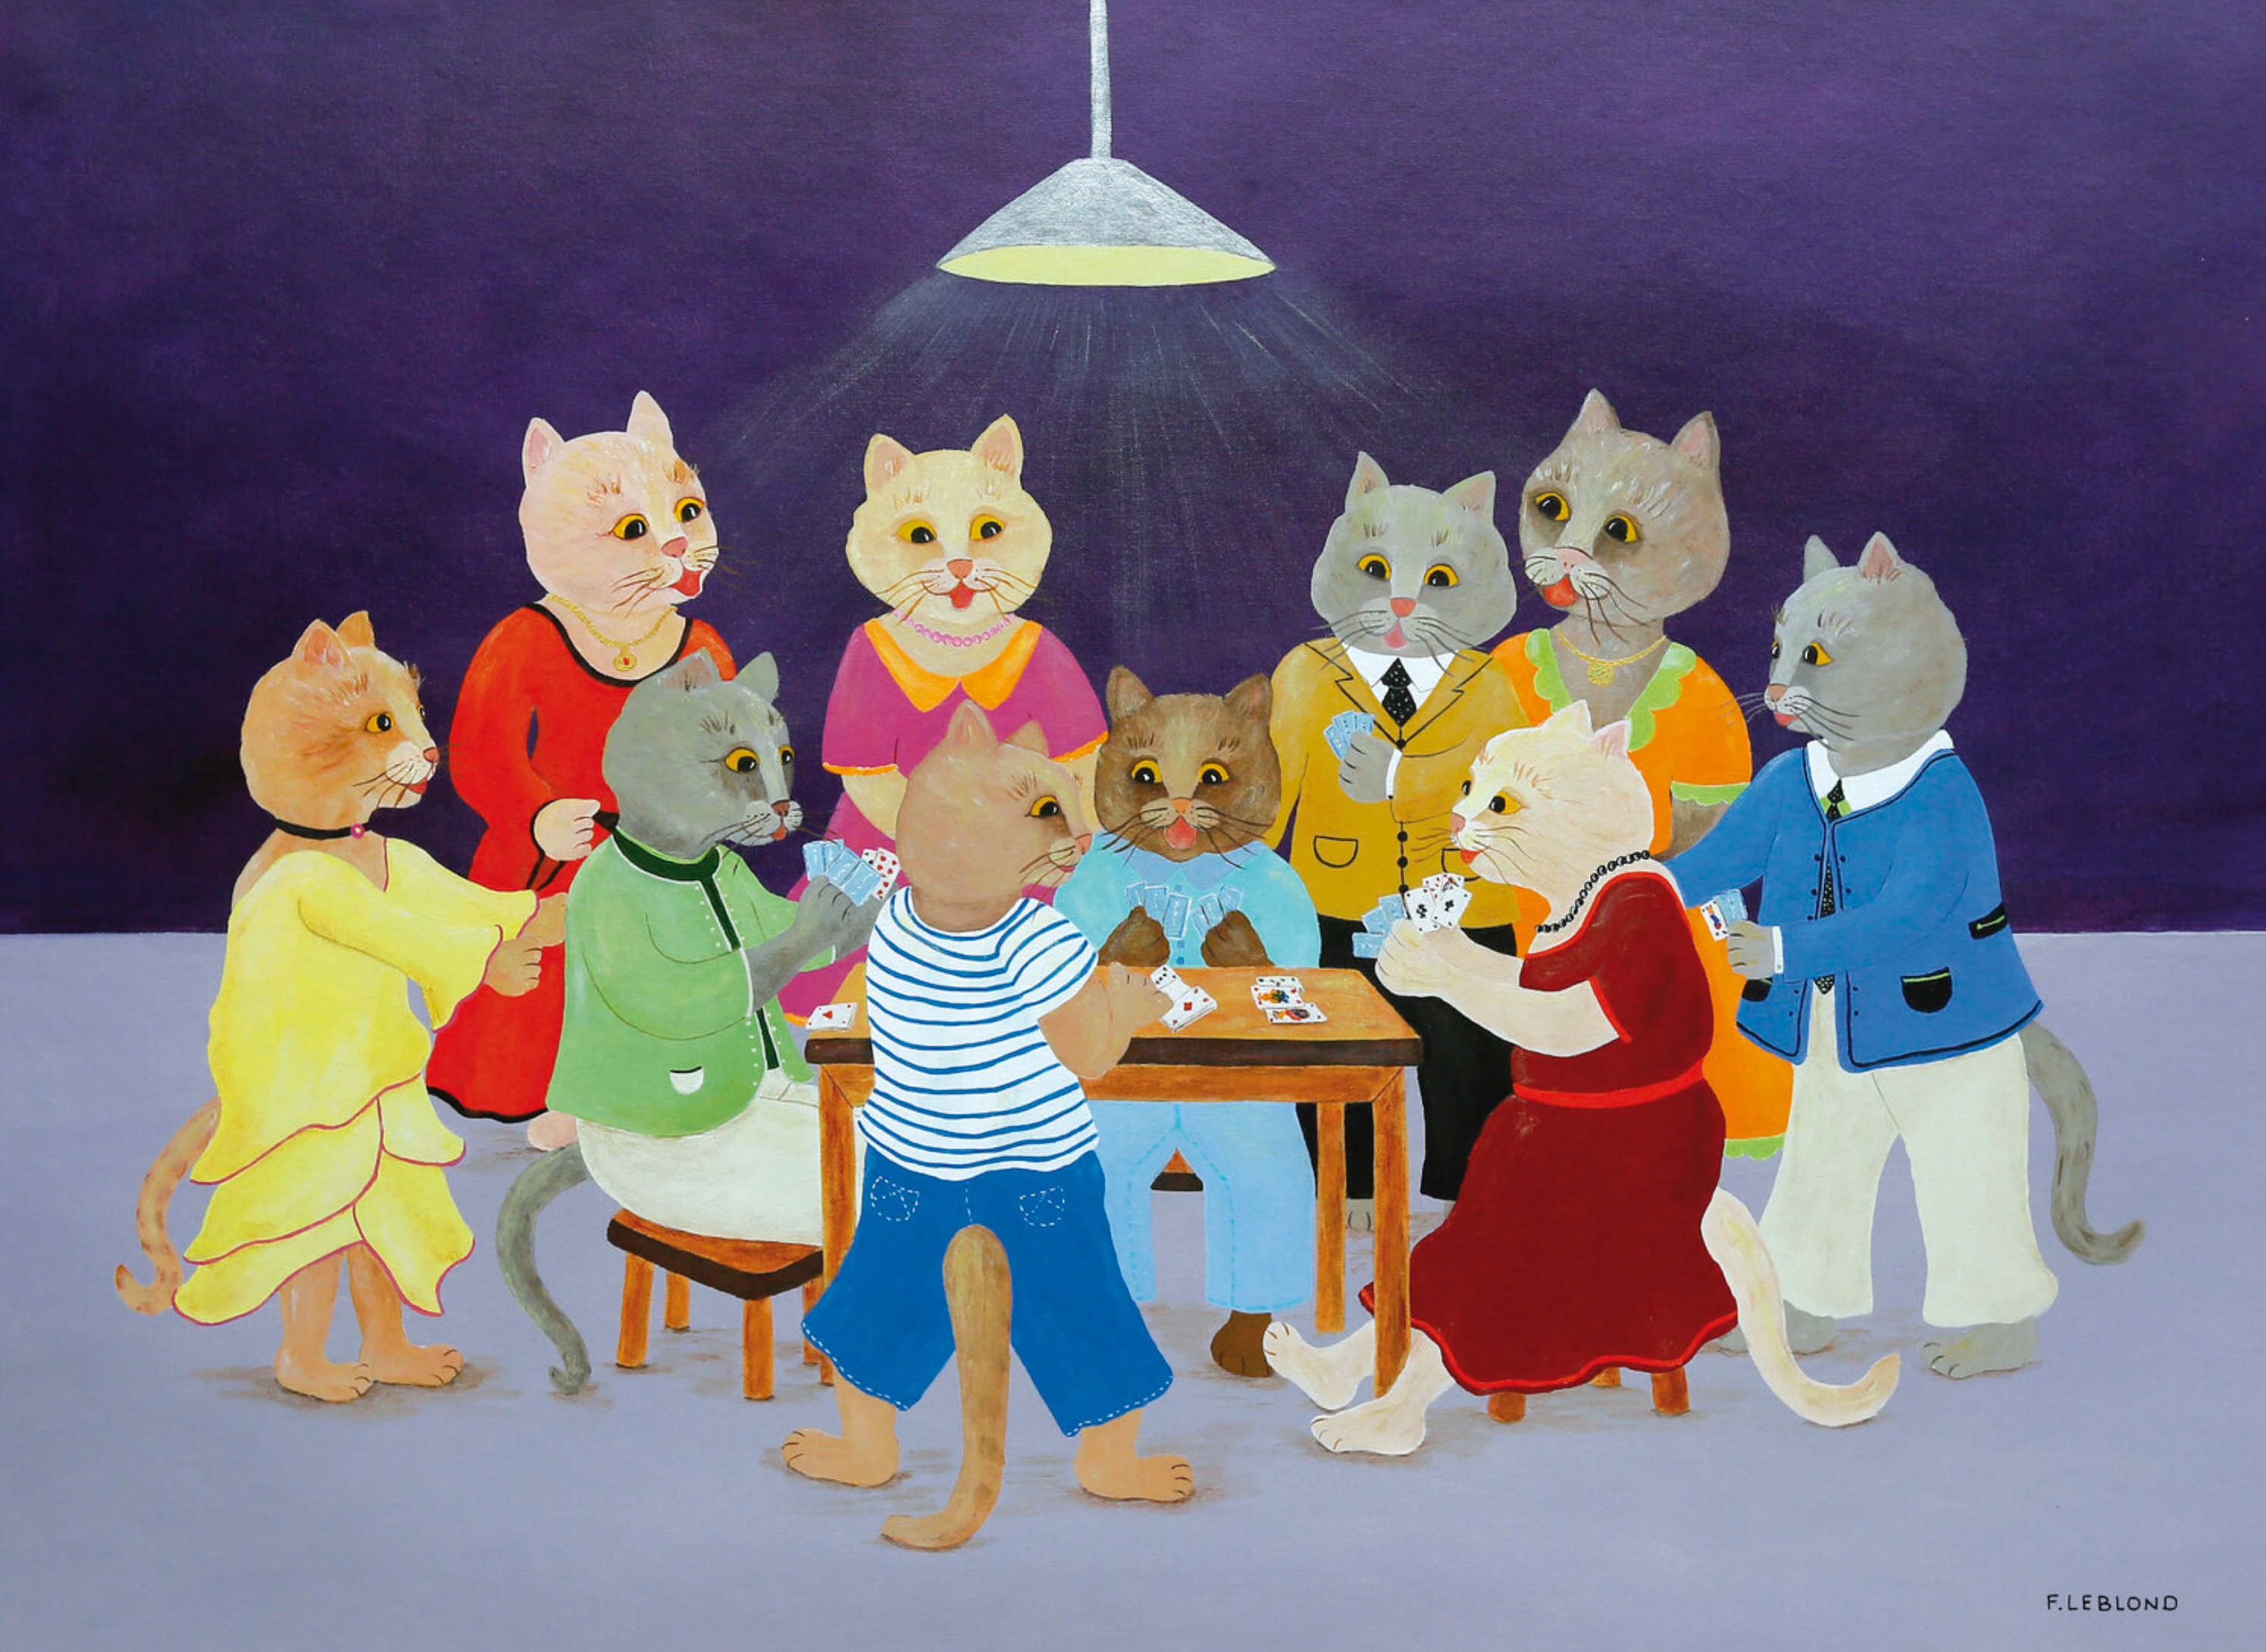 Le tripot de Françoice Lablond révèle un groupe de chats joliment habillés dans des tableaux colorés au jeu de cartes